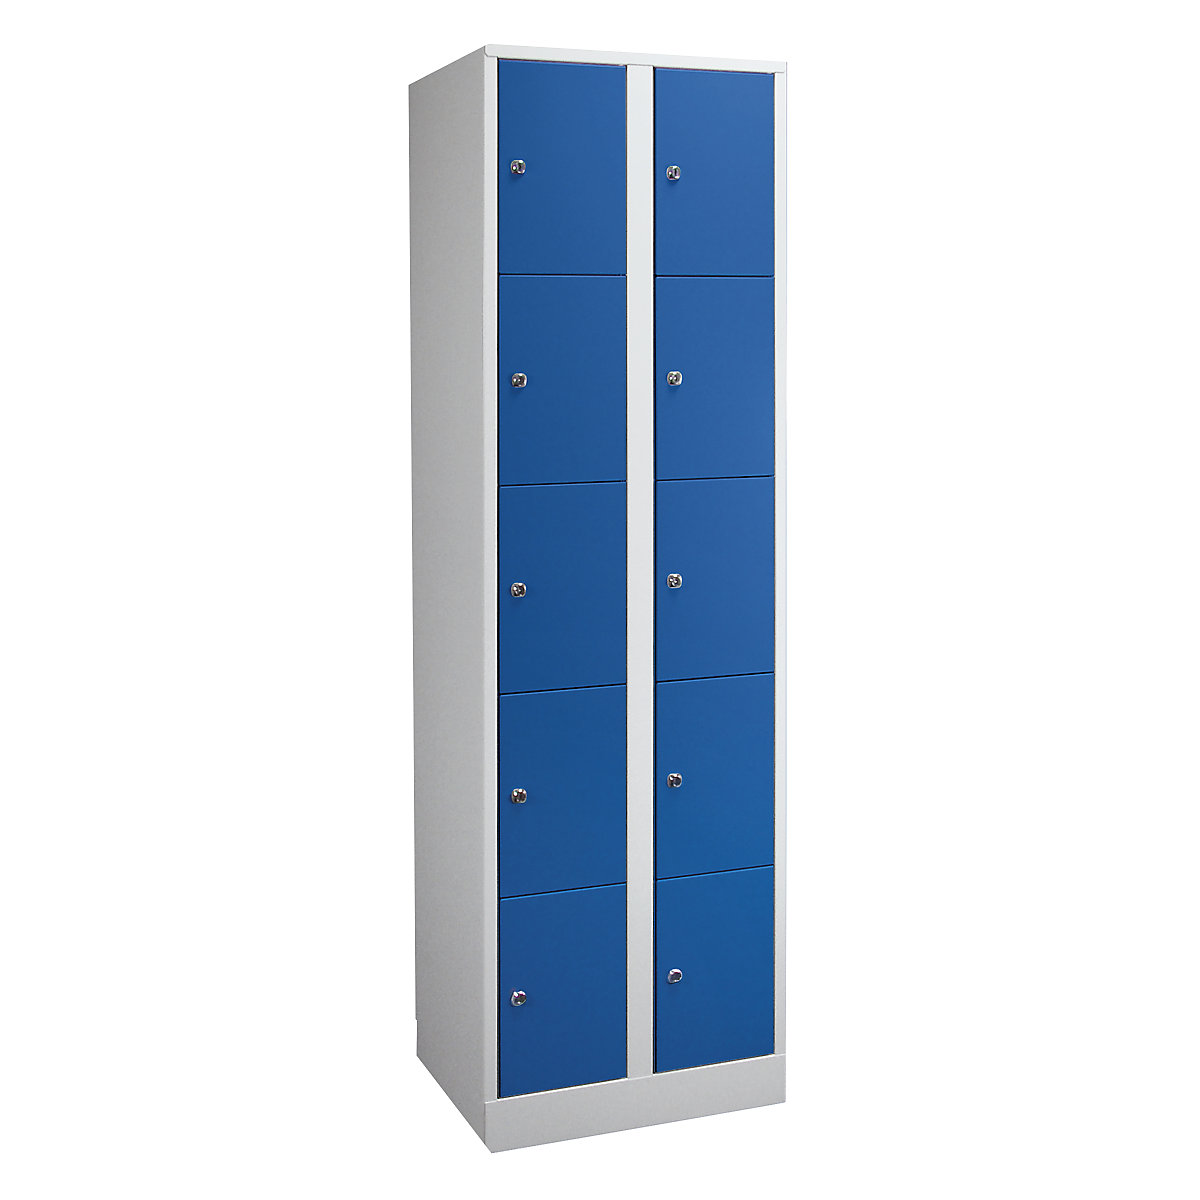 Wolf – Armoire à casiers verrouillables dimensions confort, 10 compartiments, largeur 800 mm, gris clair / bleu gentiane